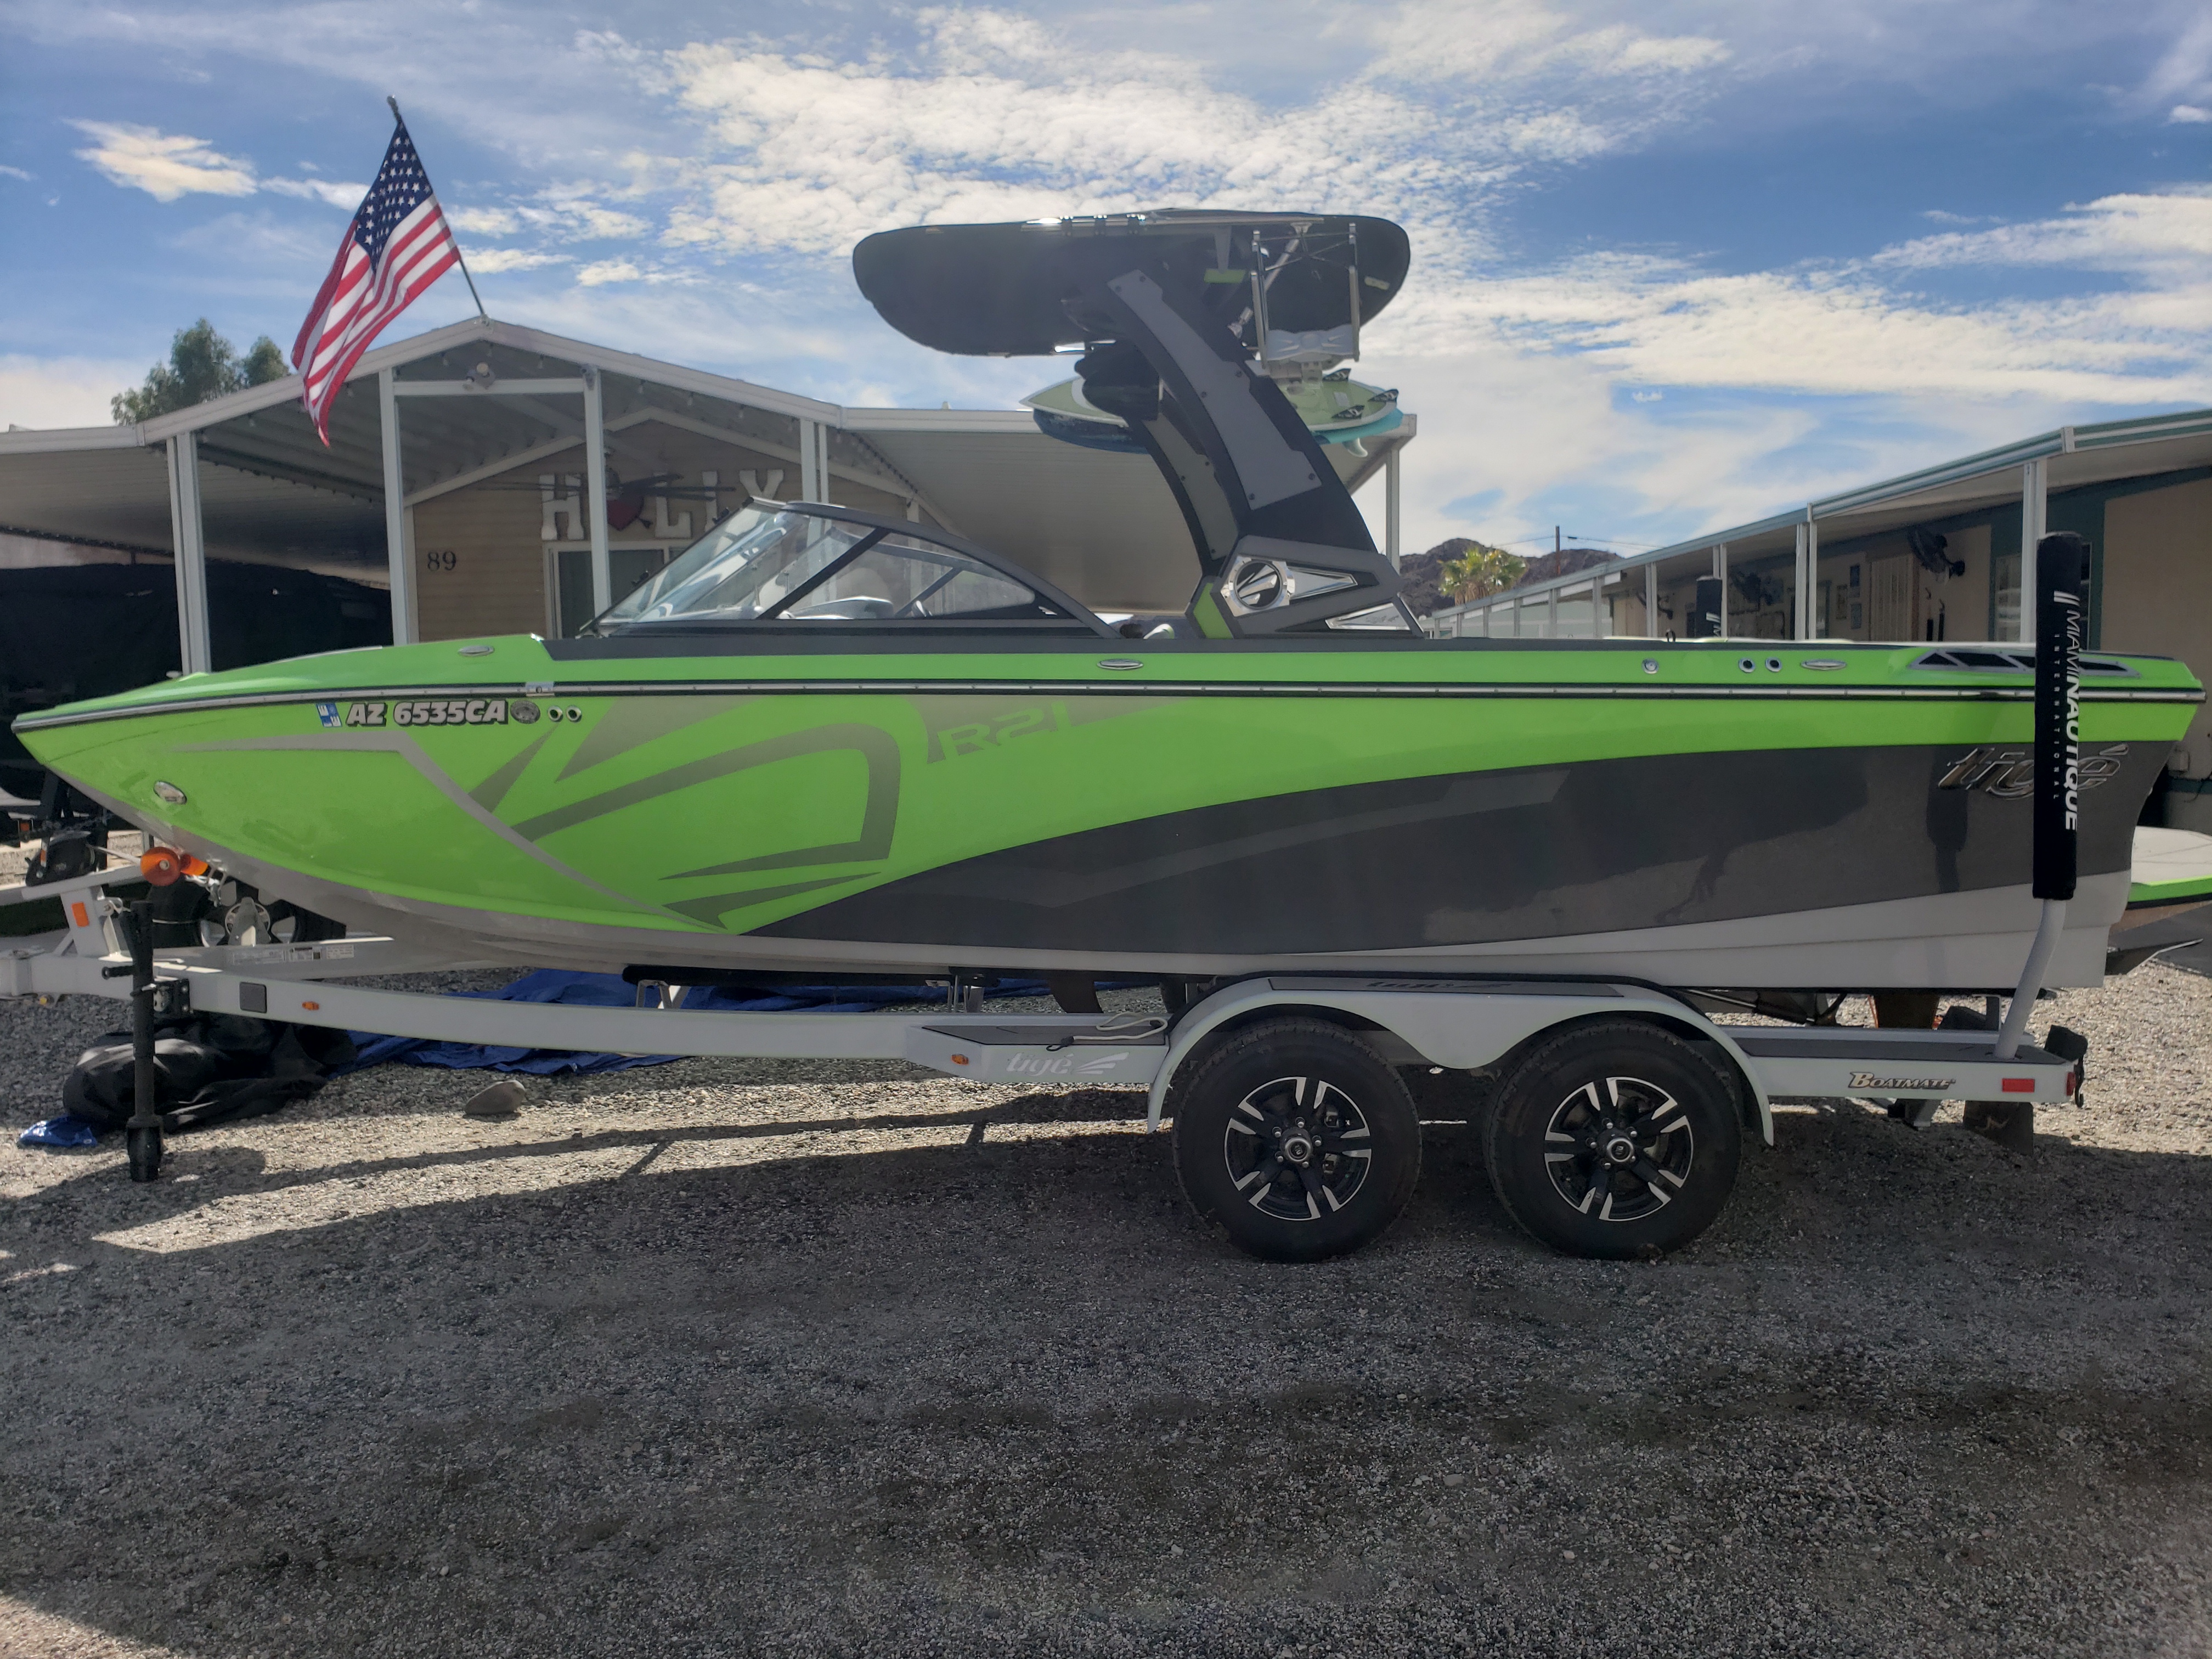 2019 Tige R21 Ski Boat for sale in Oak Glen, CA - image 5 